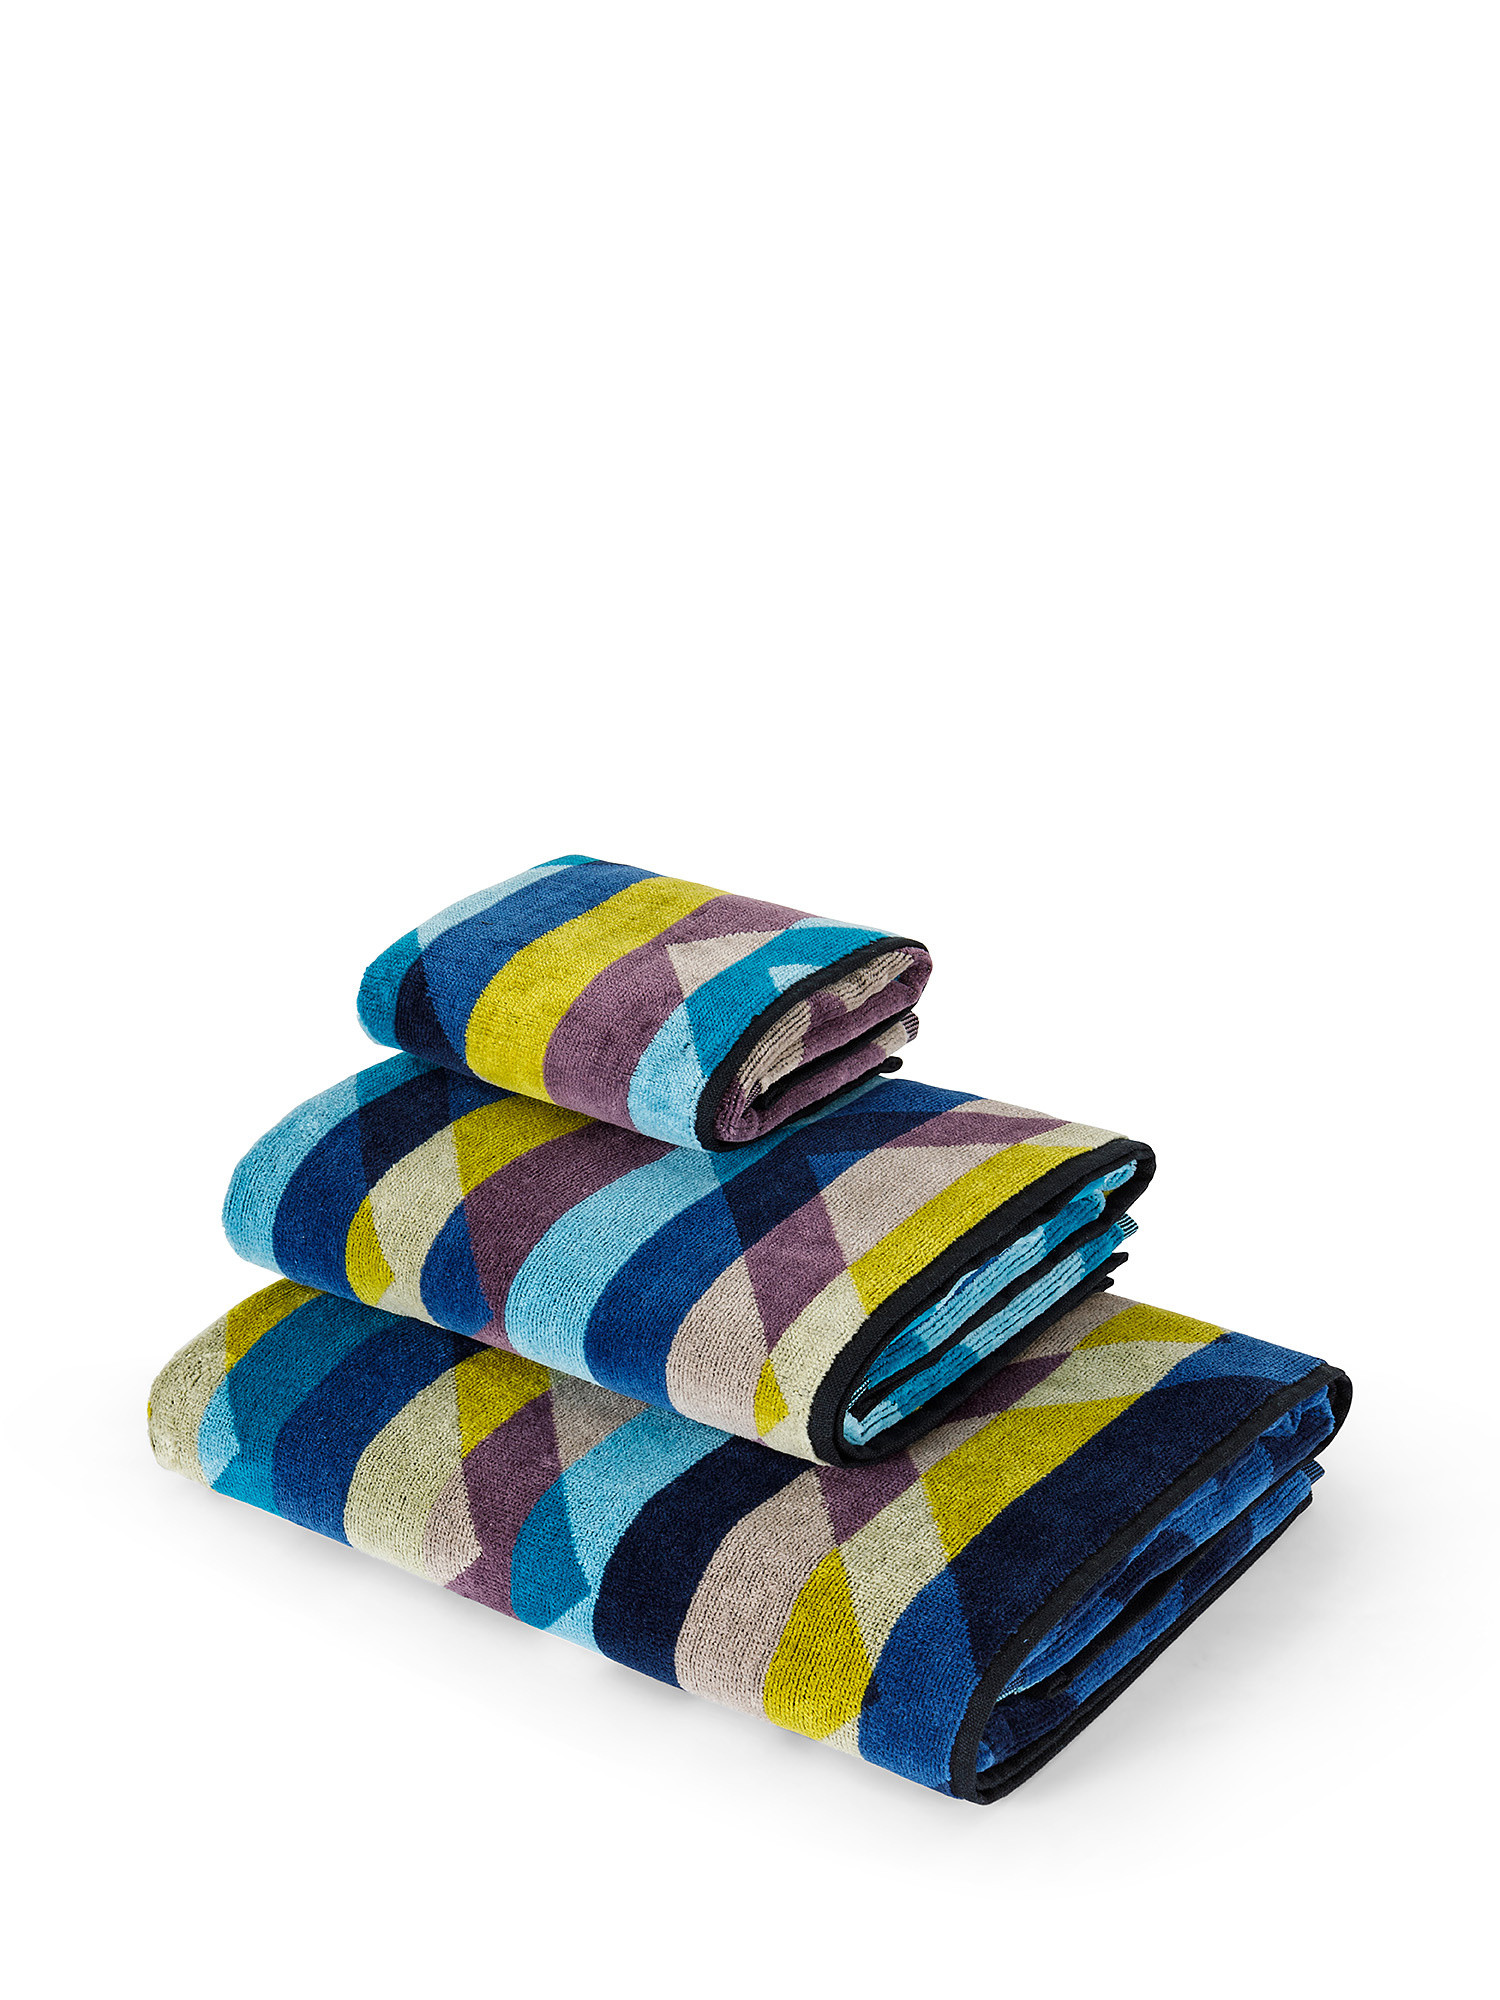 Asciugamano cotone velour motivo geometrico, Multicolor, large